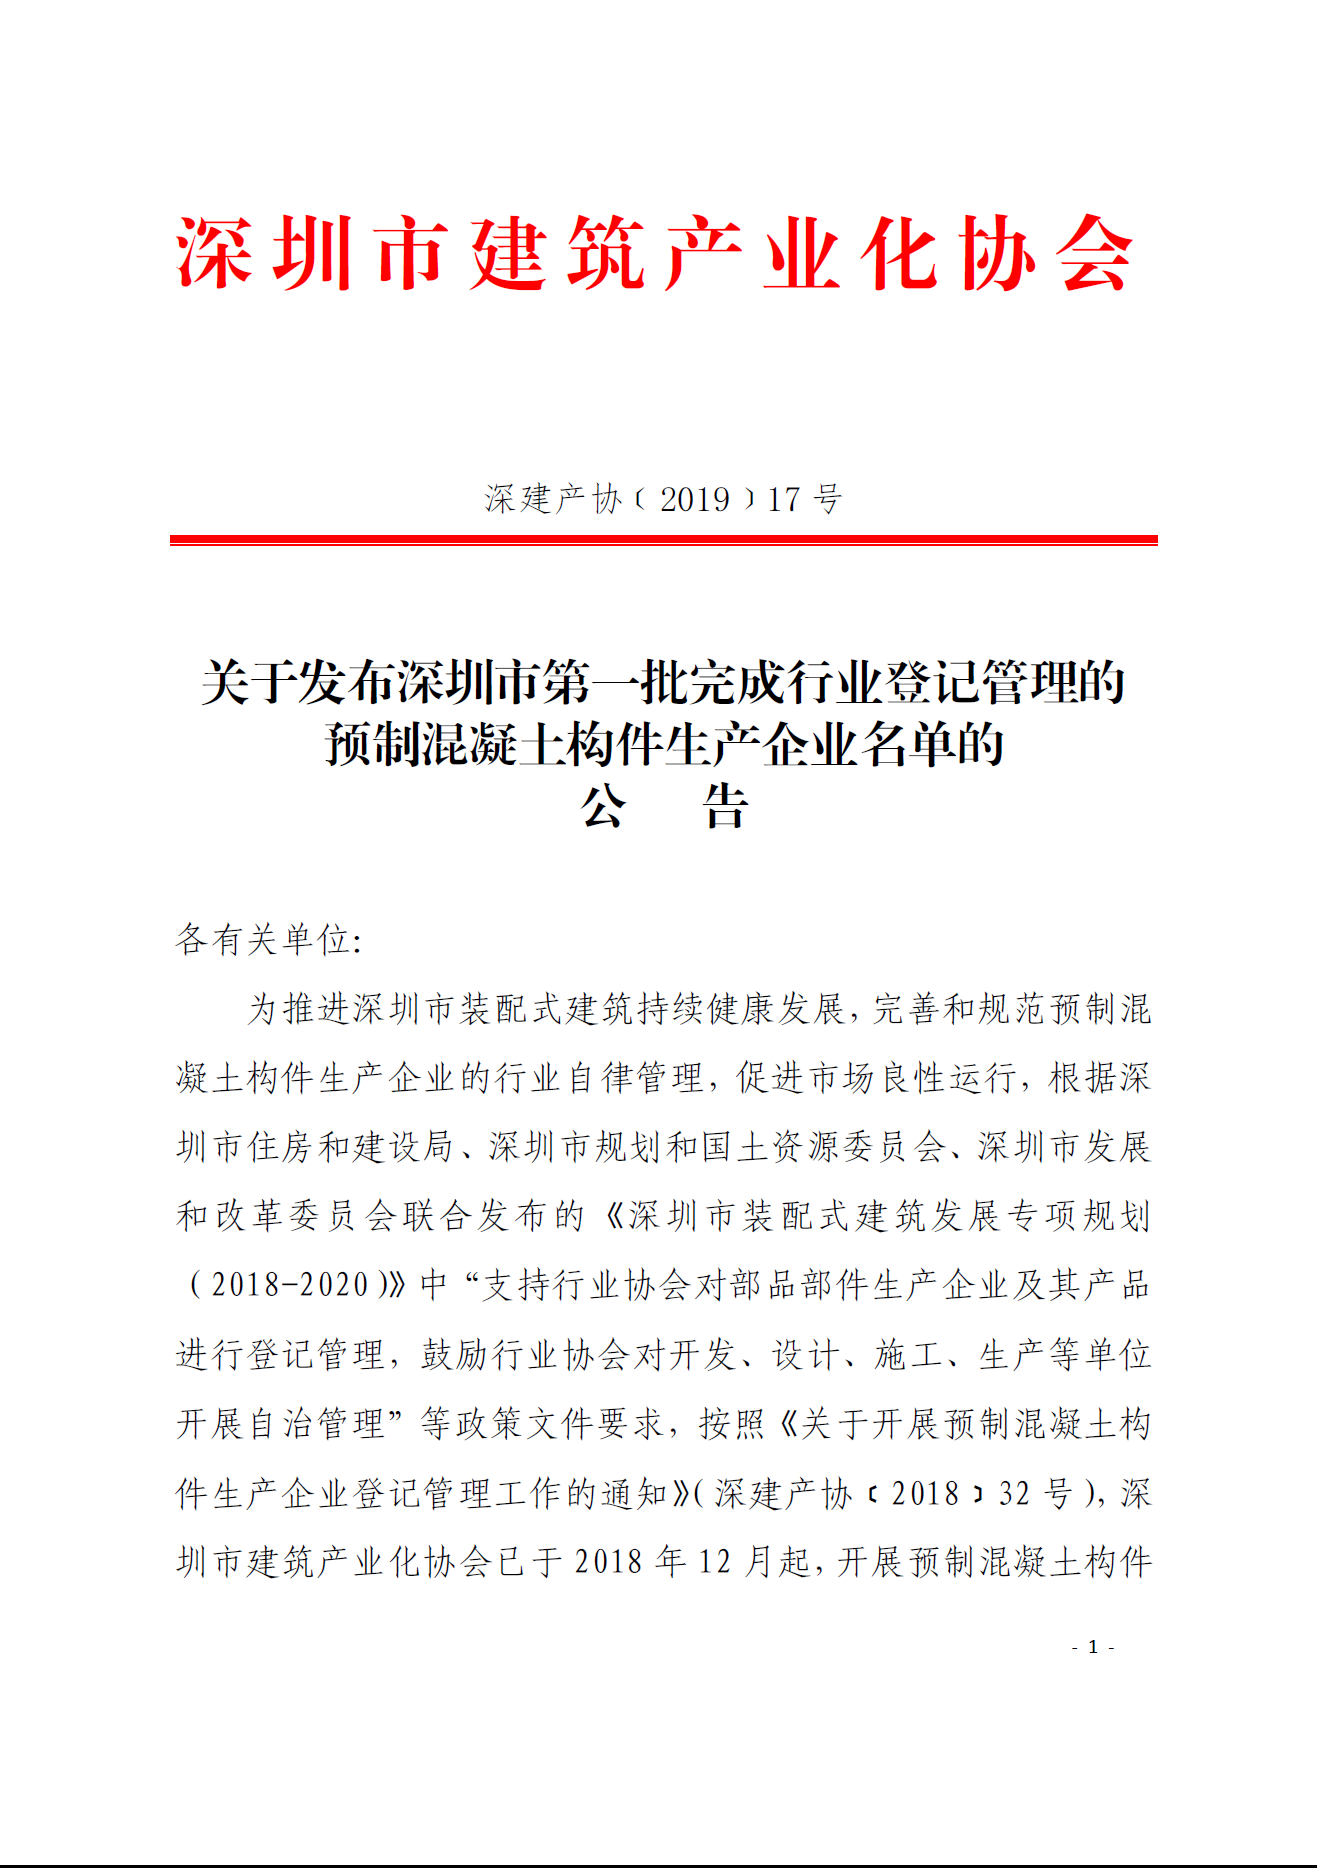 关于发布深圳市第一批完成行业登记管理的预制混凝土构件生产企业名单的公告